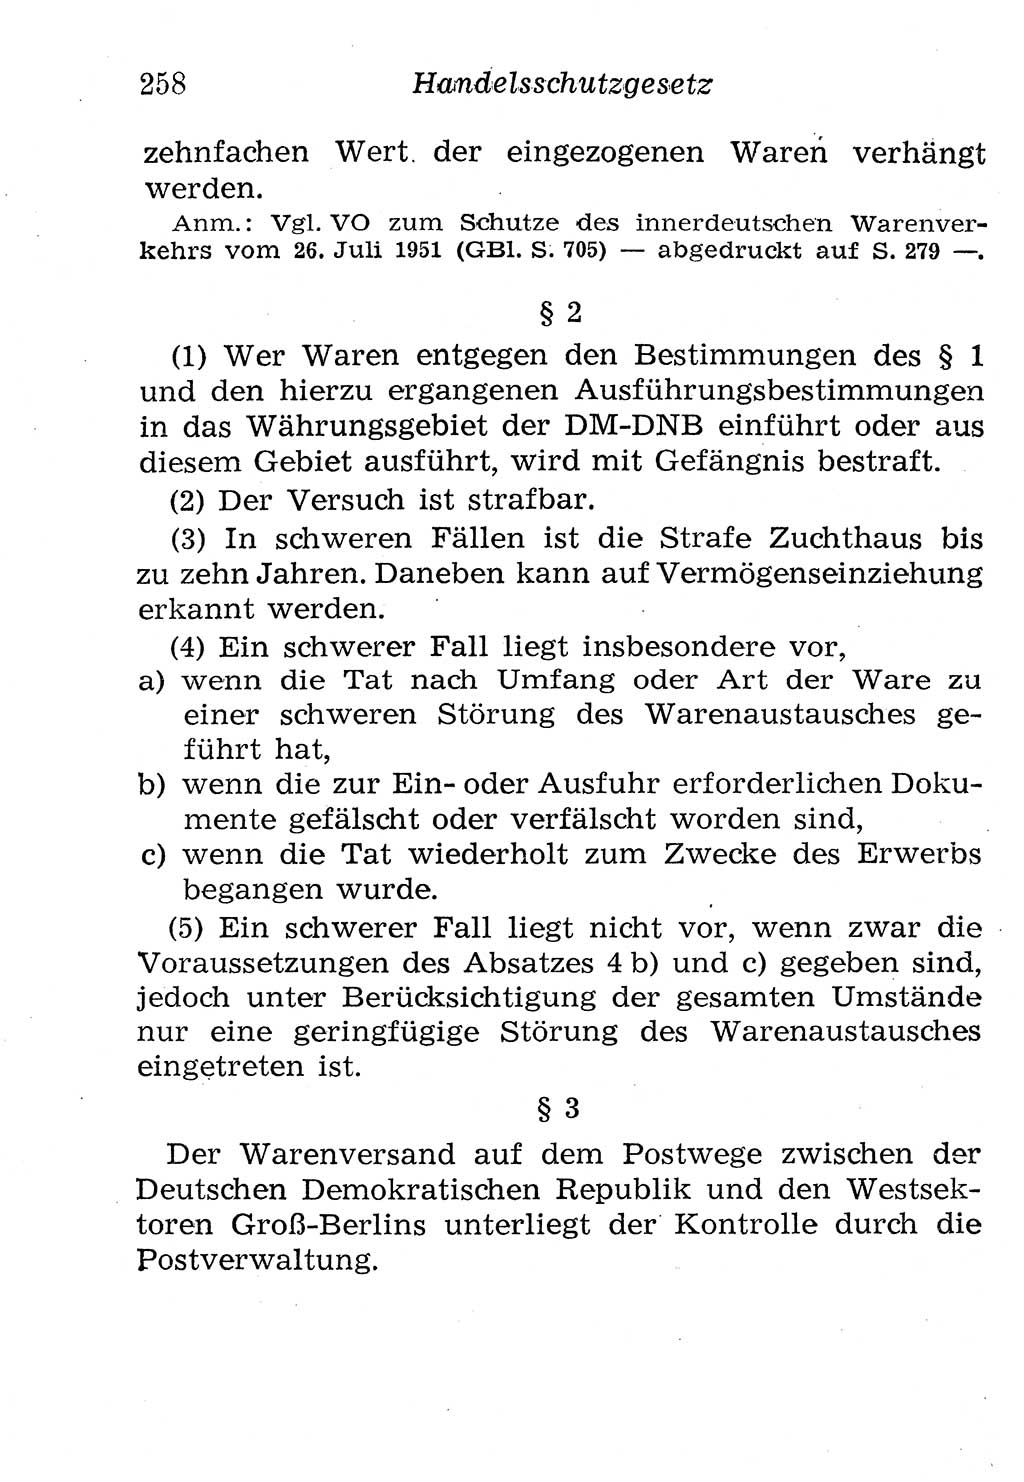 Strafgesetzbuch (StGB) und andere Strafgesetze [Deutsche Demokratische Republik (DDR)] 1958, Seite 258 (StGB Strafges. DDR 1958, S. 258)